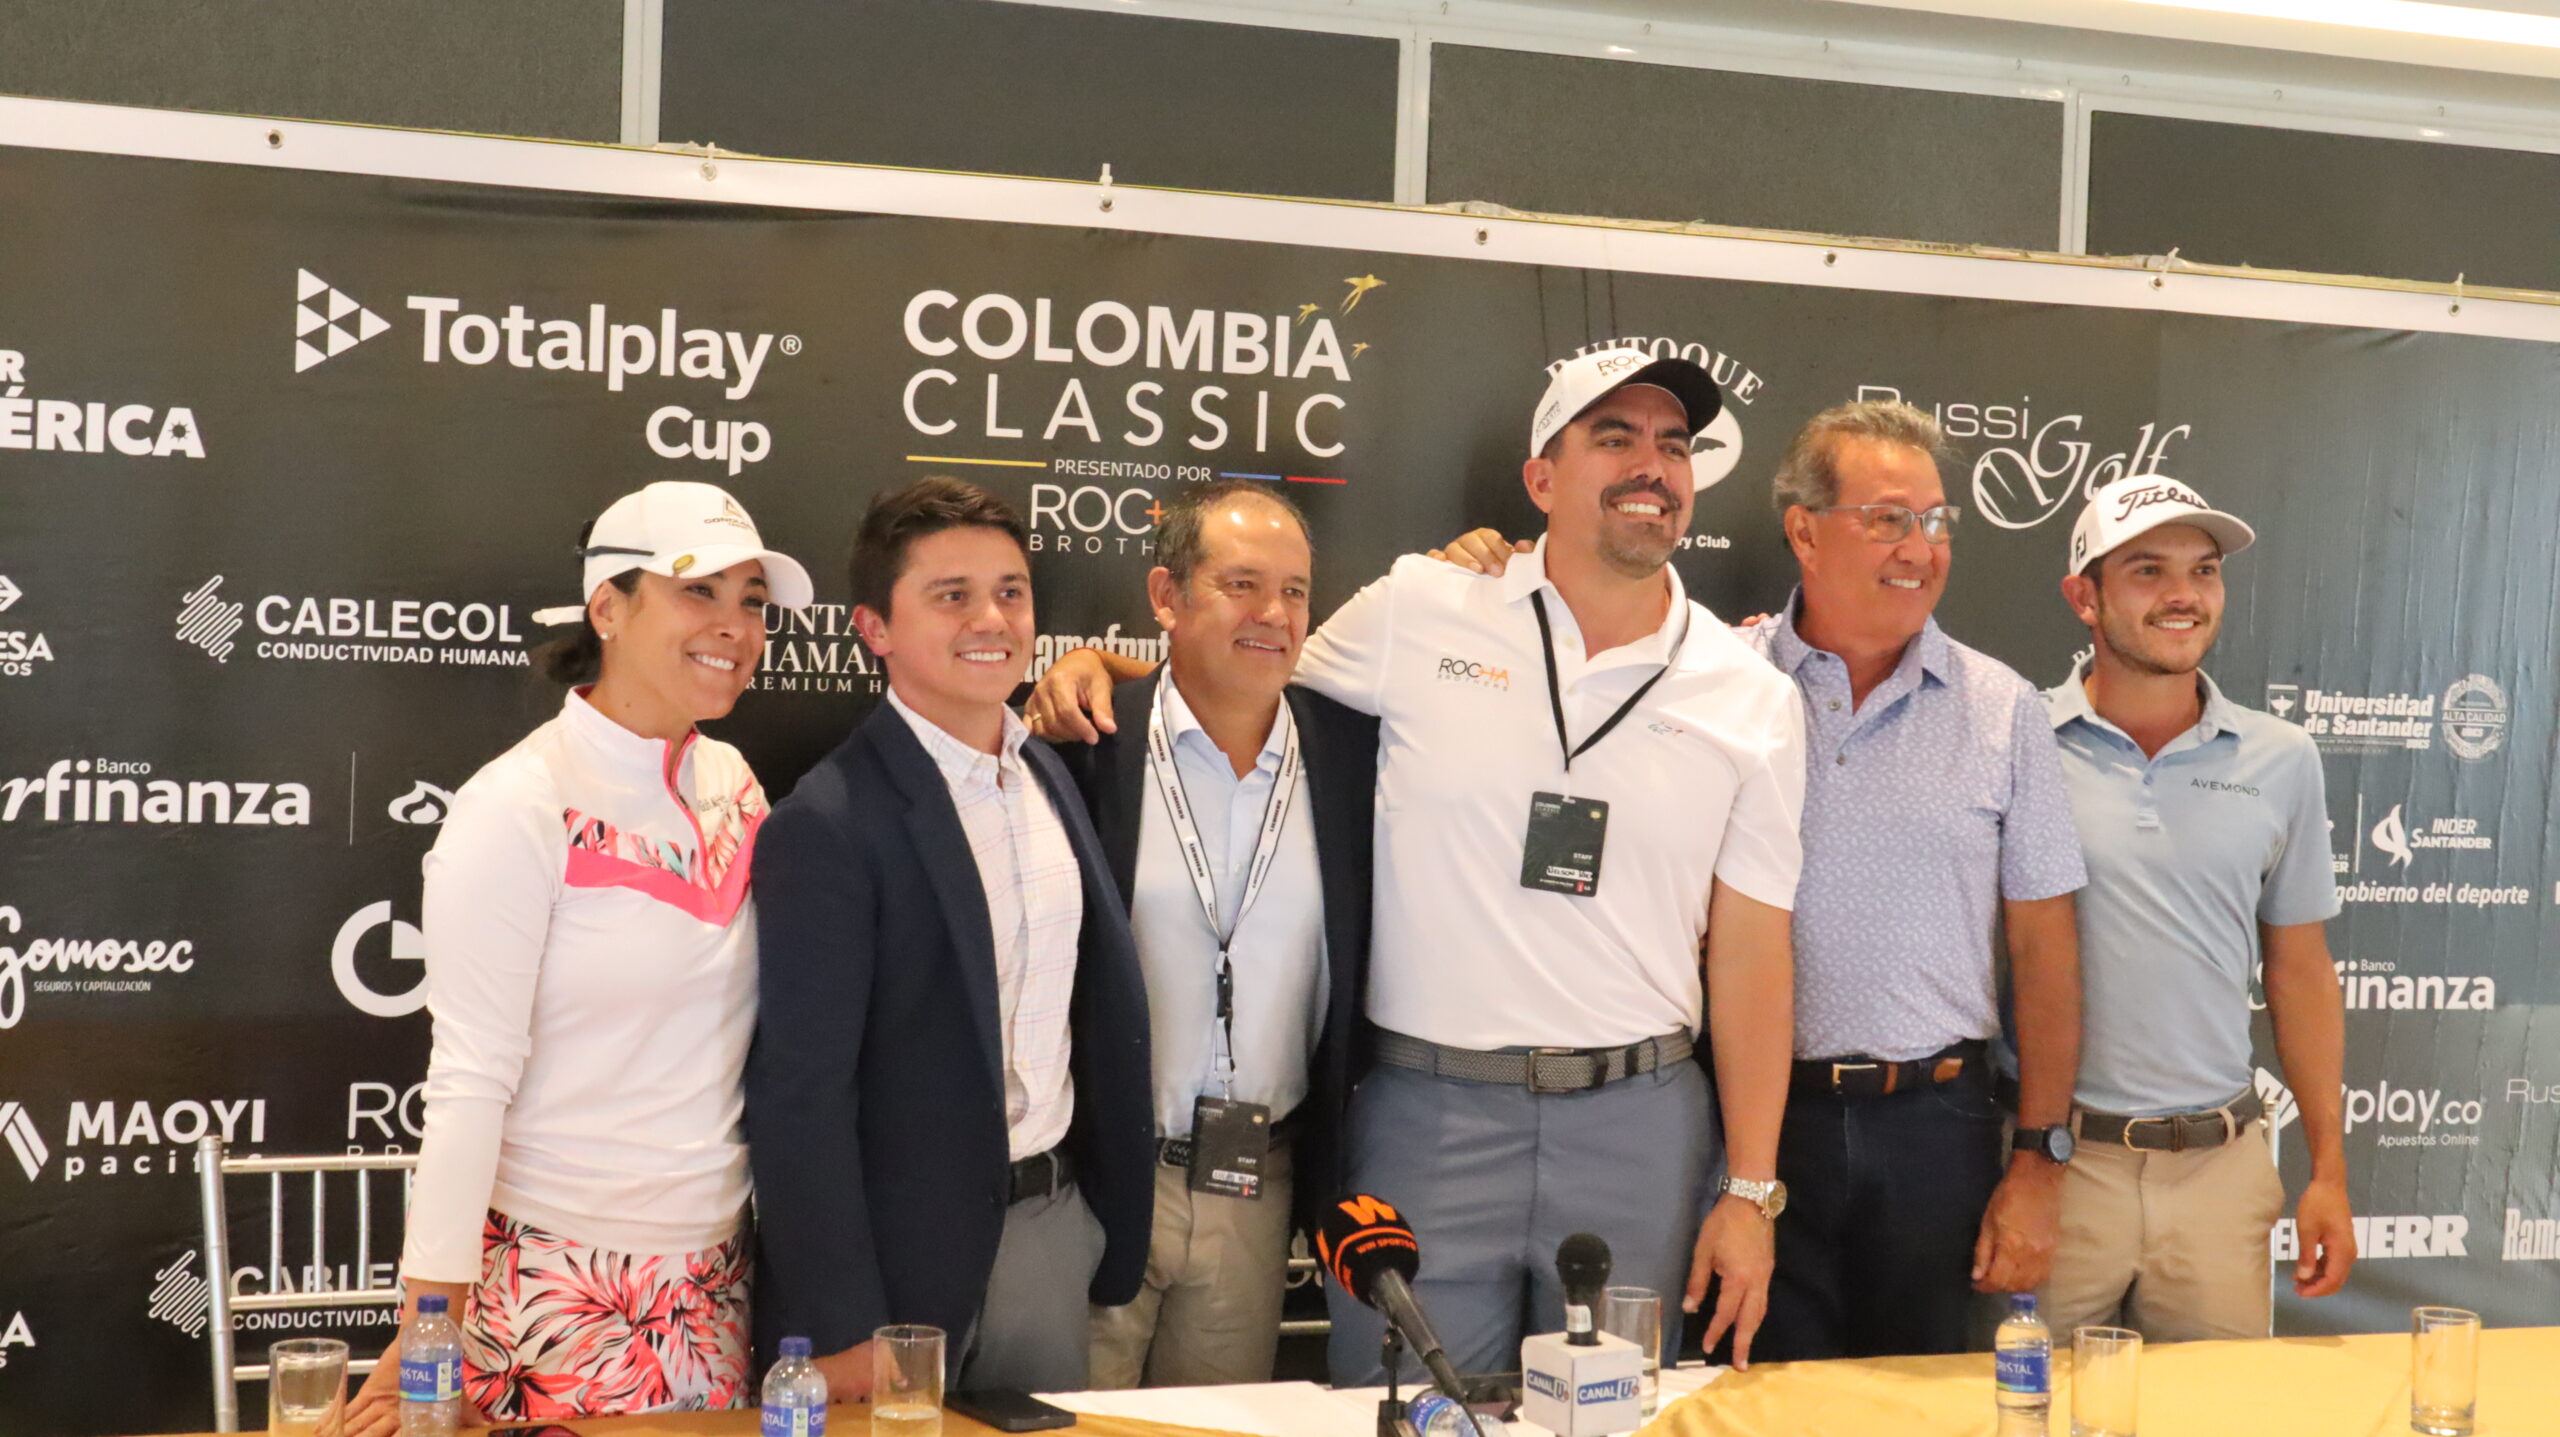 El Colombia Classic presentado por Rocha Brothers se jugará en Ruitoque